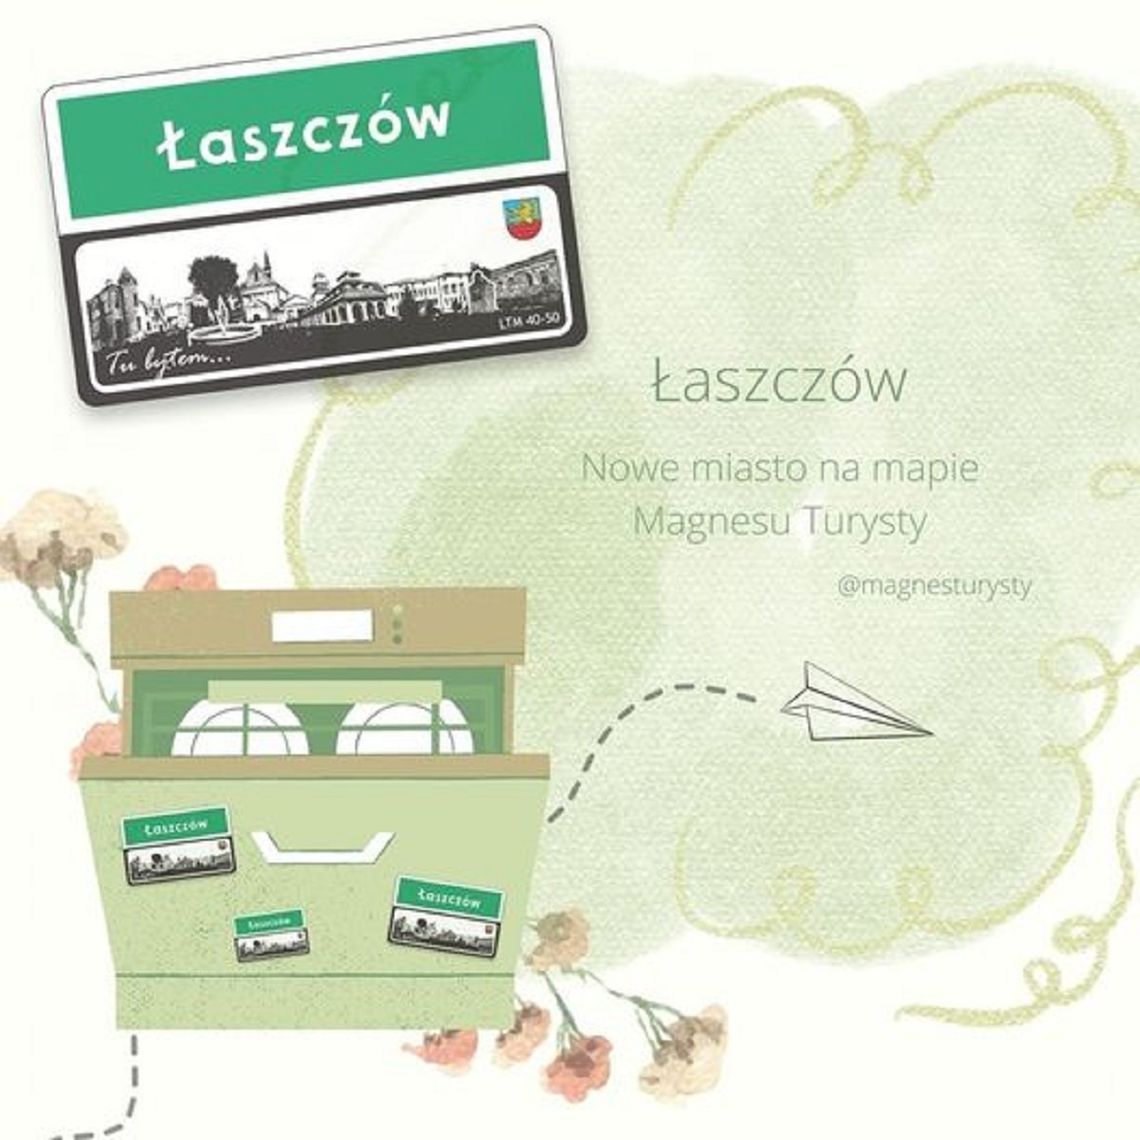 Łaszczów przyłączył się do ogólnopolskiego projektu "Magnes turysty".